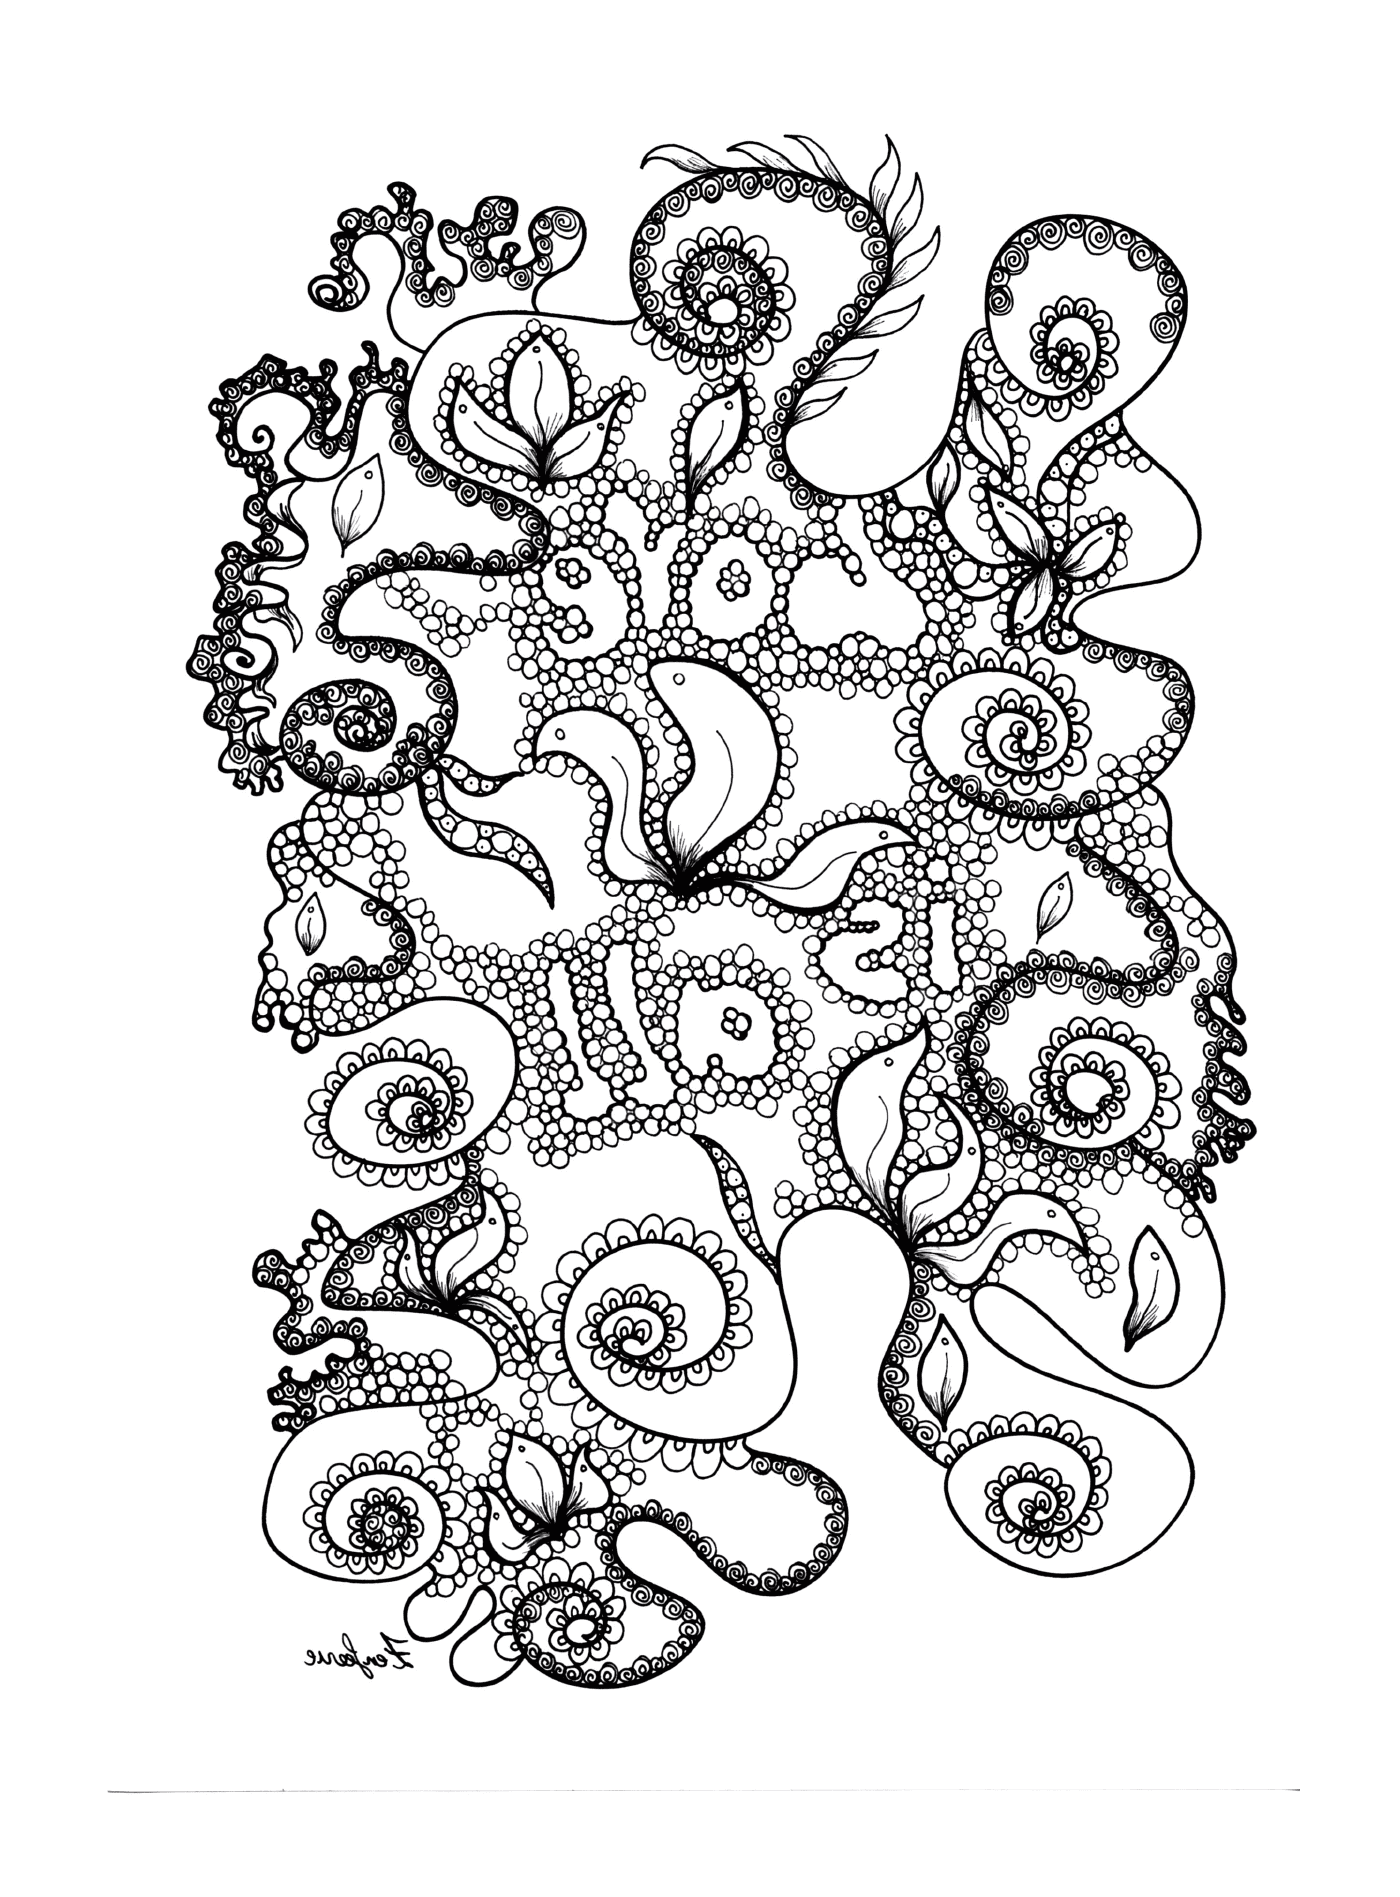  Criatura marinha com tentáculos 